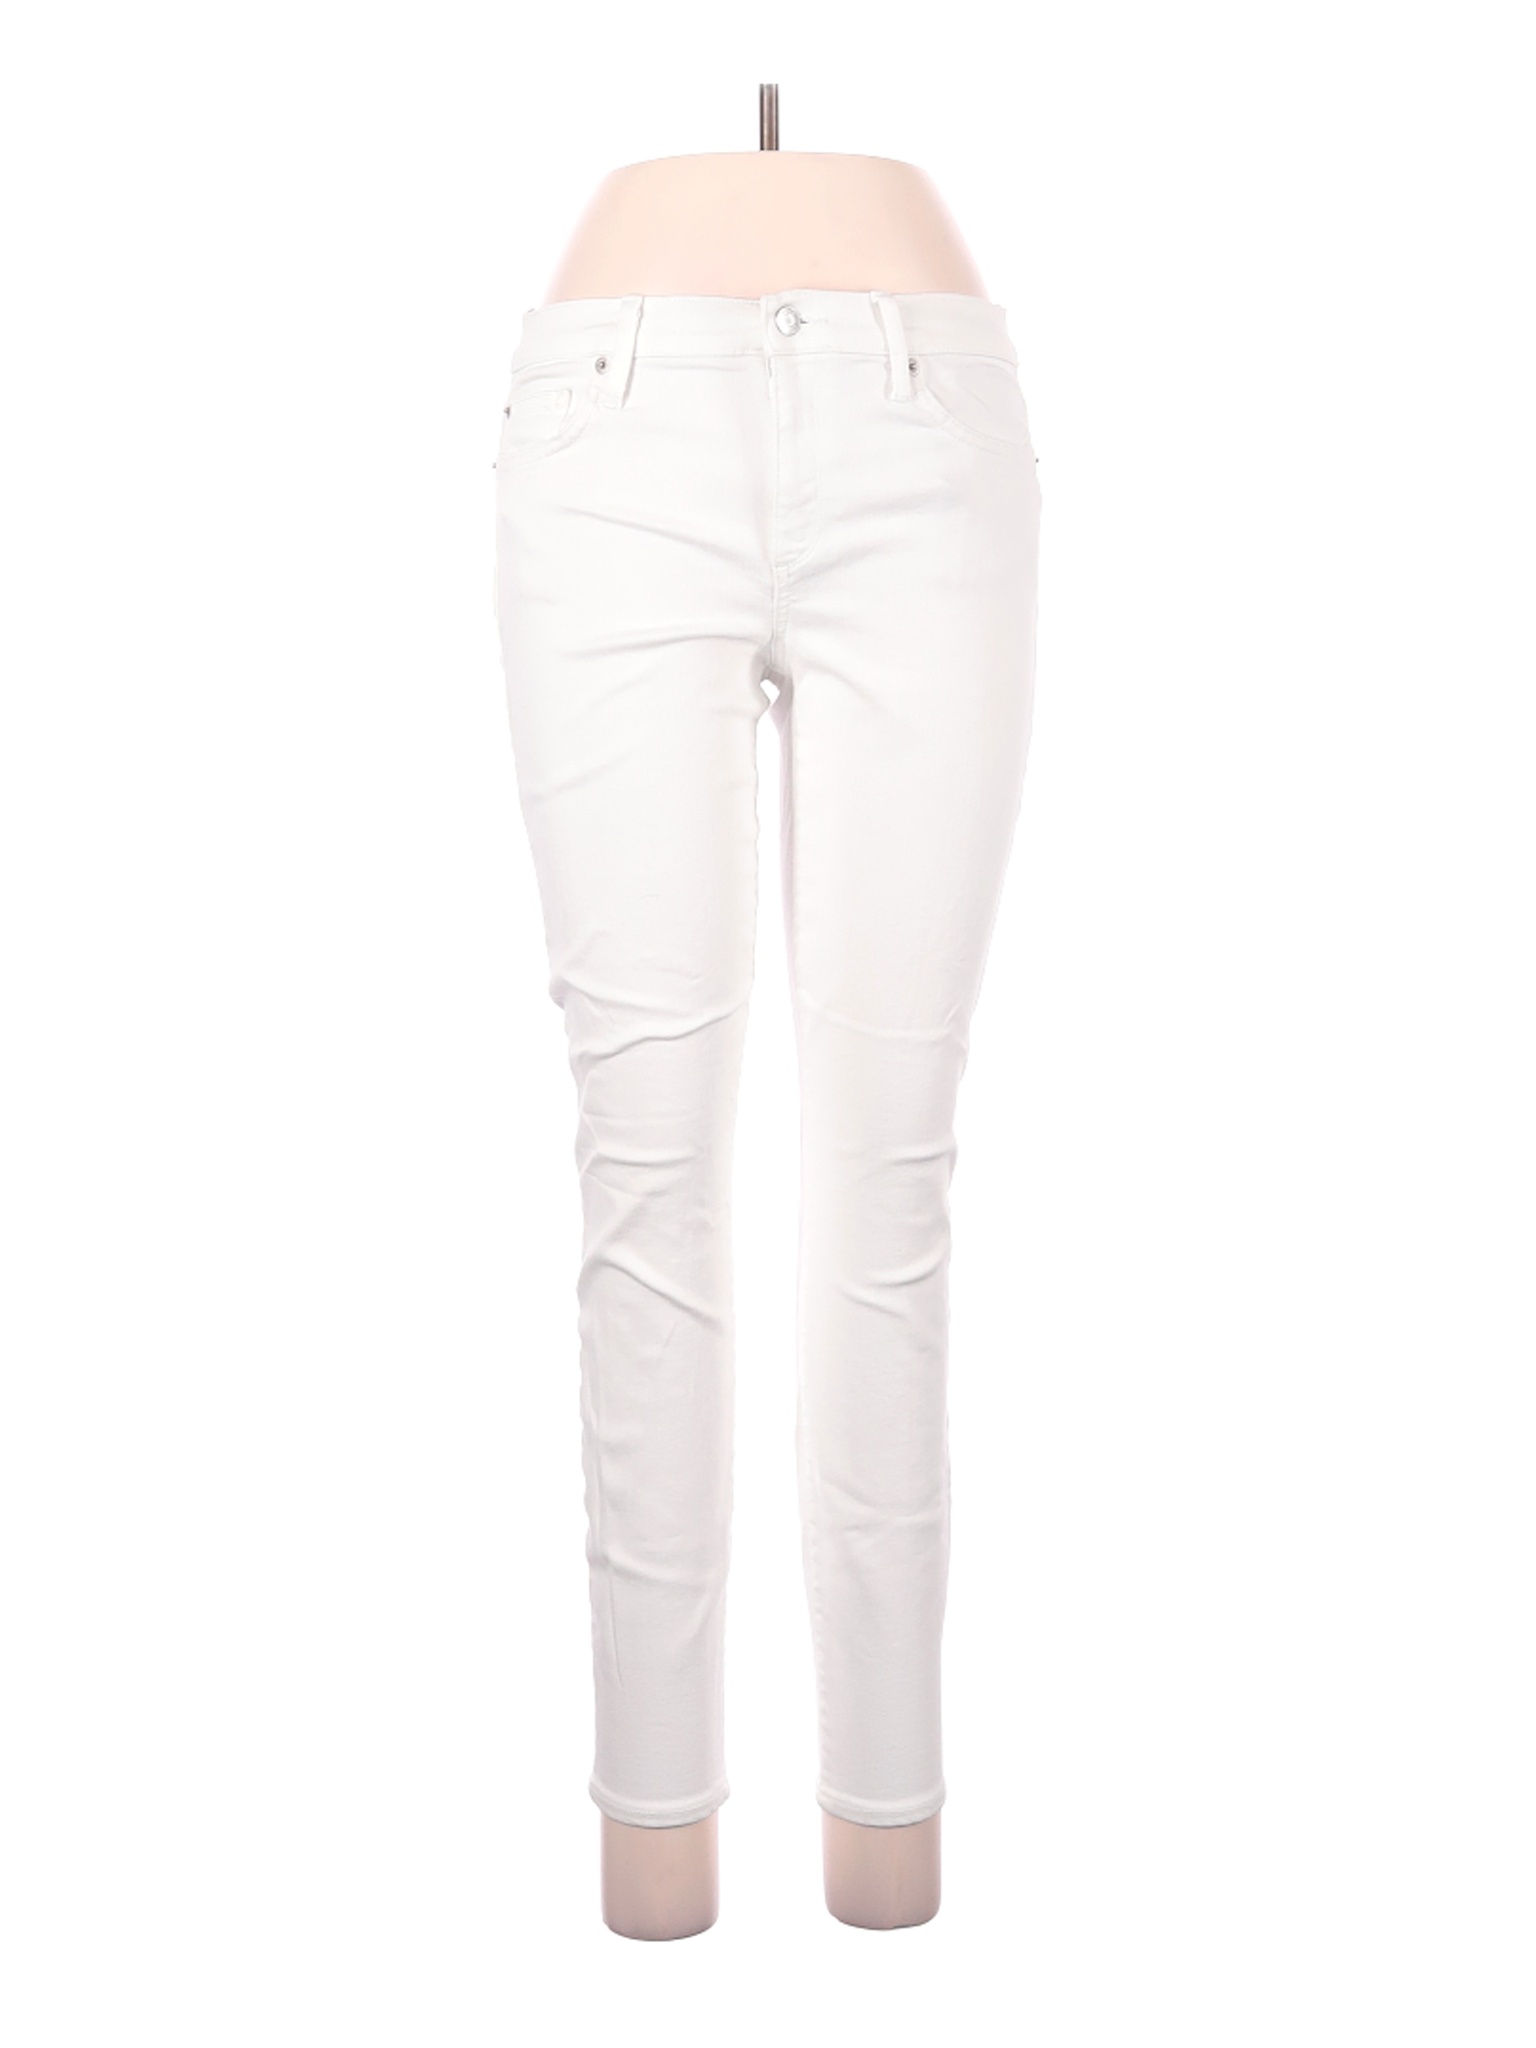 Gap Women White Jeans 29W | eBay